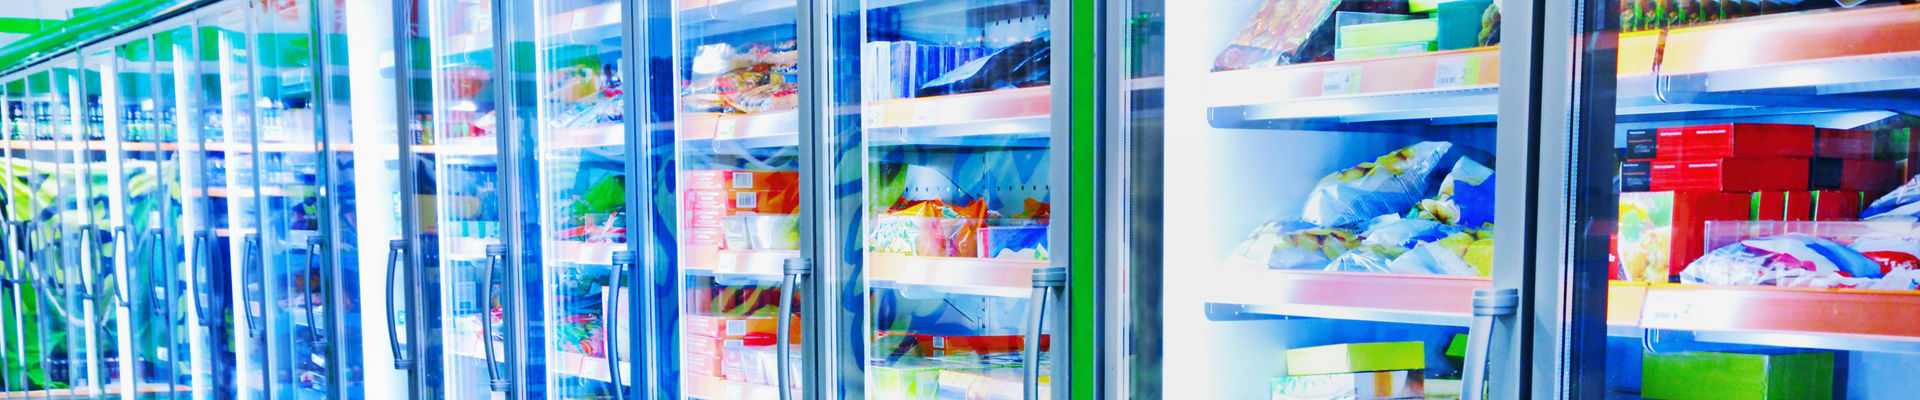 Corredor de supermercado de produtos refrigerados